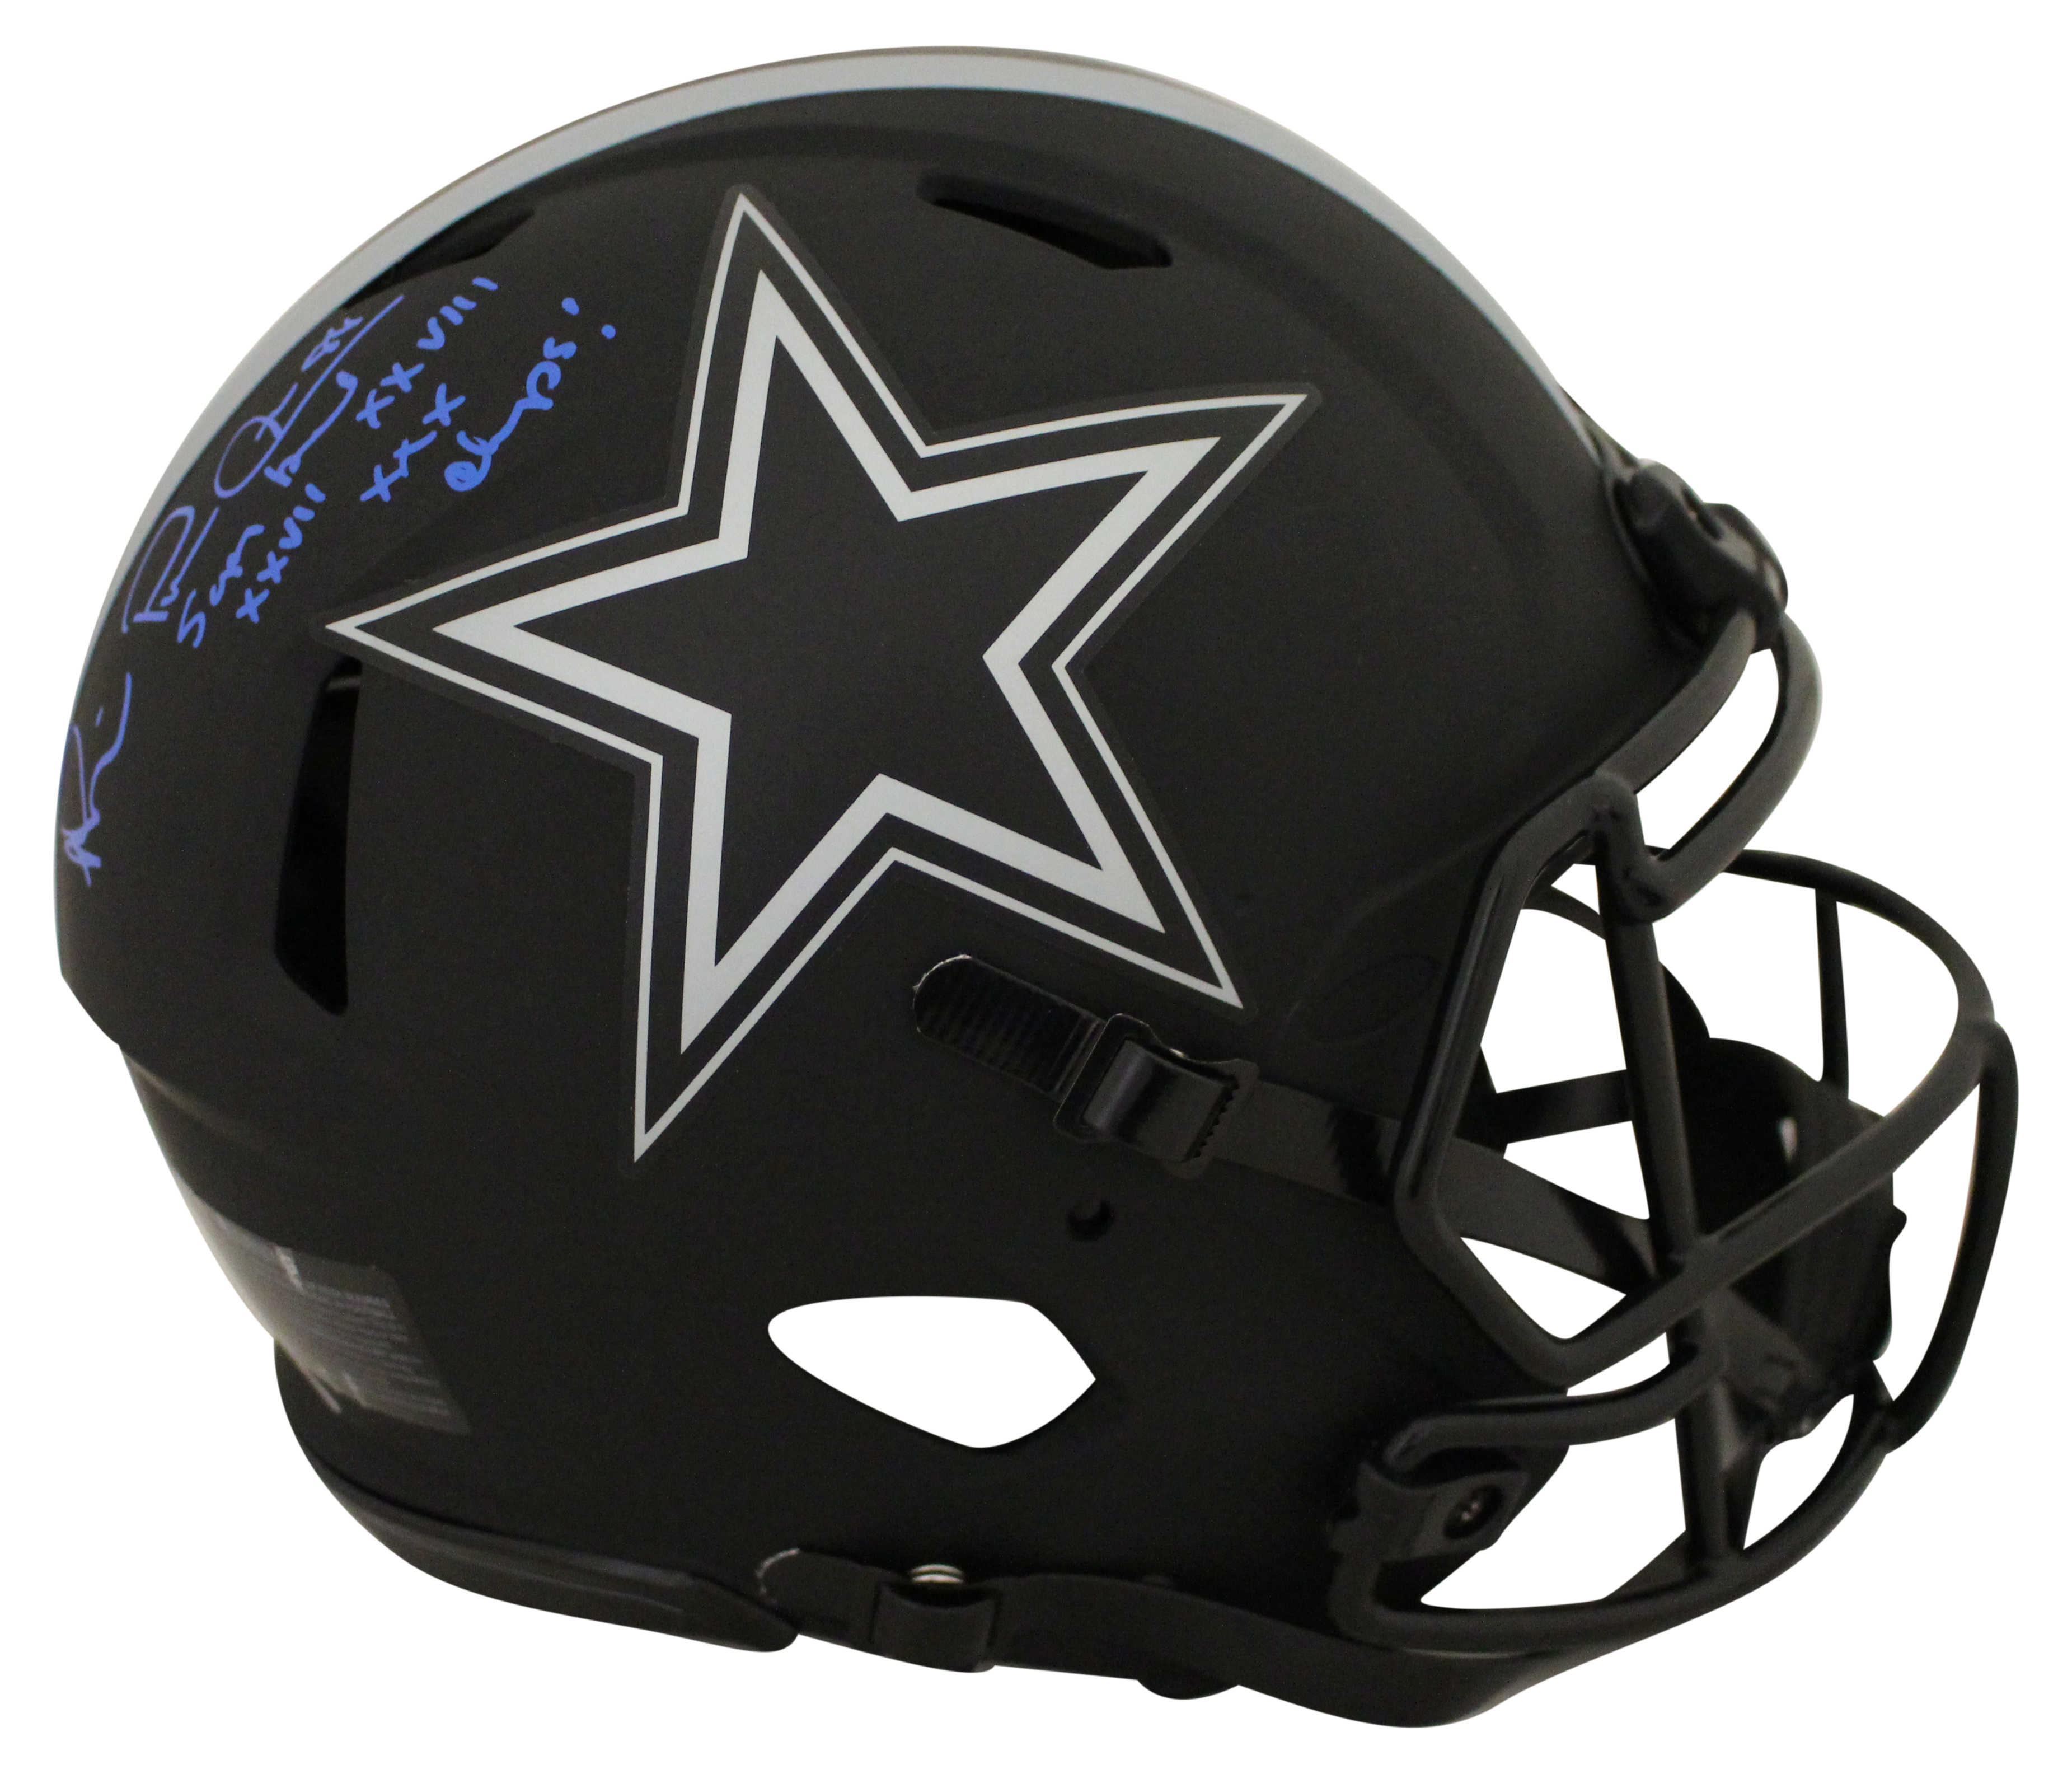 Michael Irvin Signed Dallas Cowboys Authentic Eclipse Helmet 3x SB BAS 28113